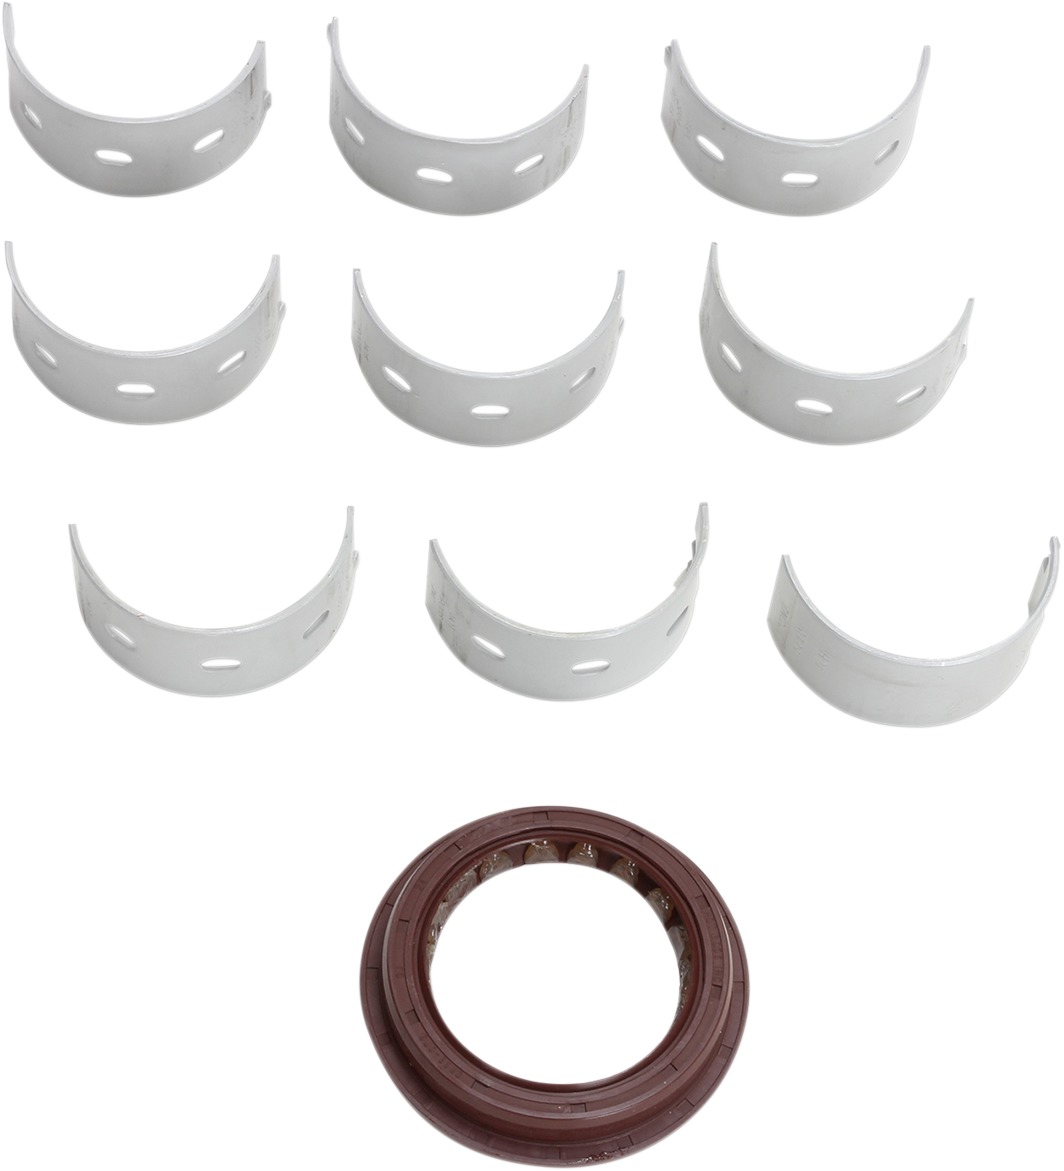 Main Bearing and Seal Kits - Bearing/Seal Kit - Click Image to Close